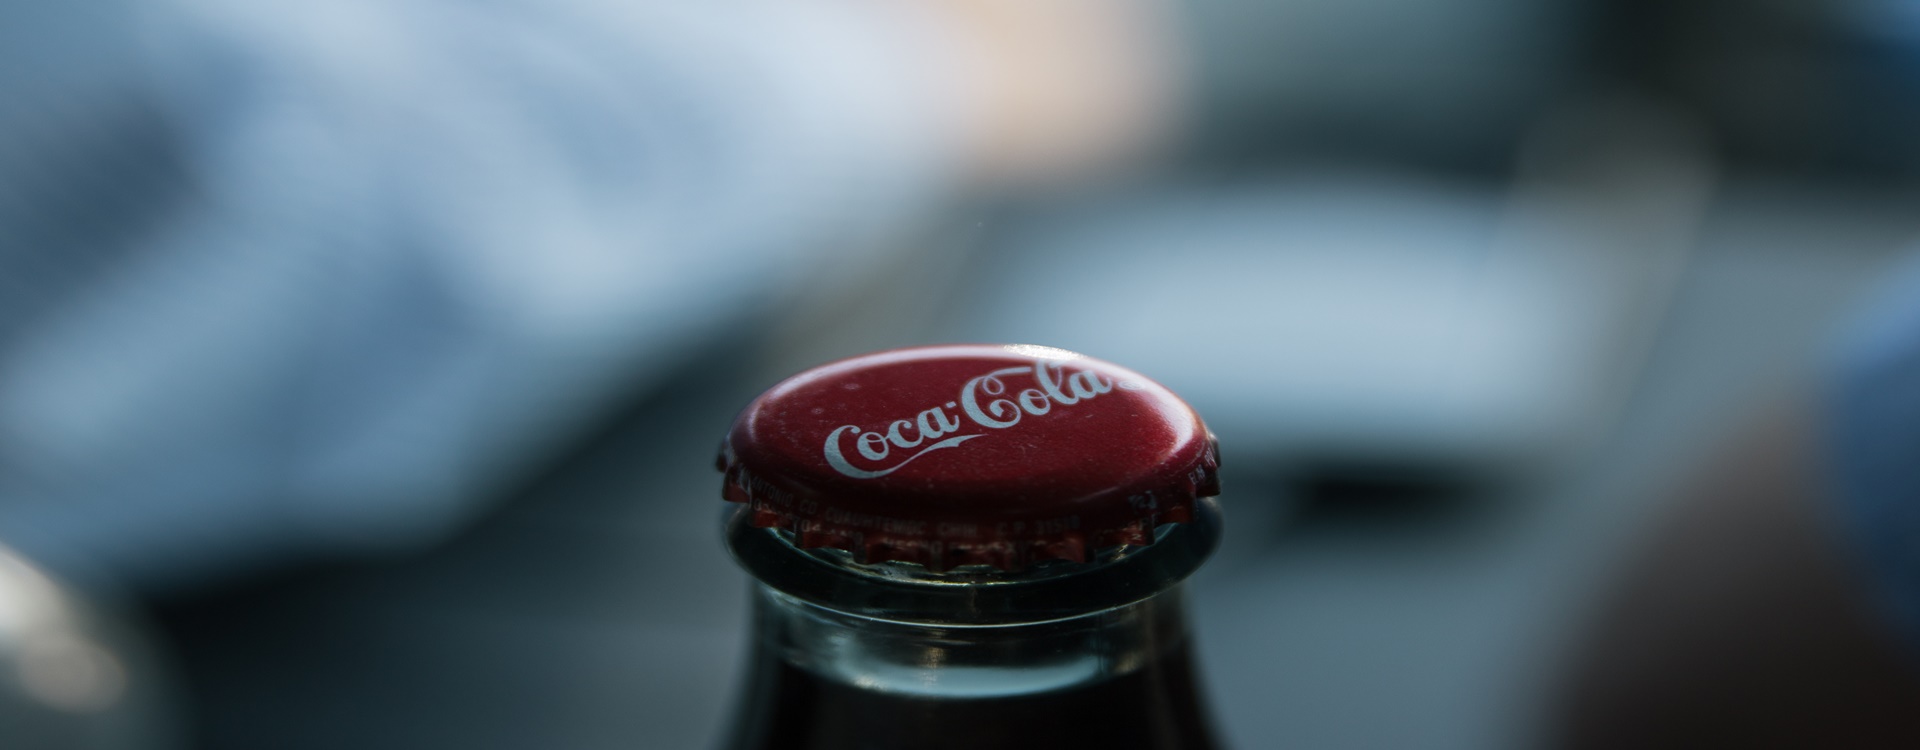 “In tên lên lon Coca” – Chiến dịch marketing thành công rực rỡ của coca-cola